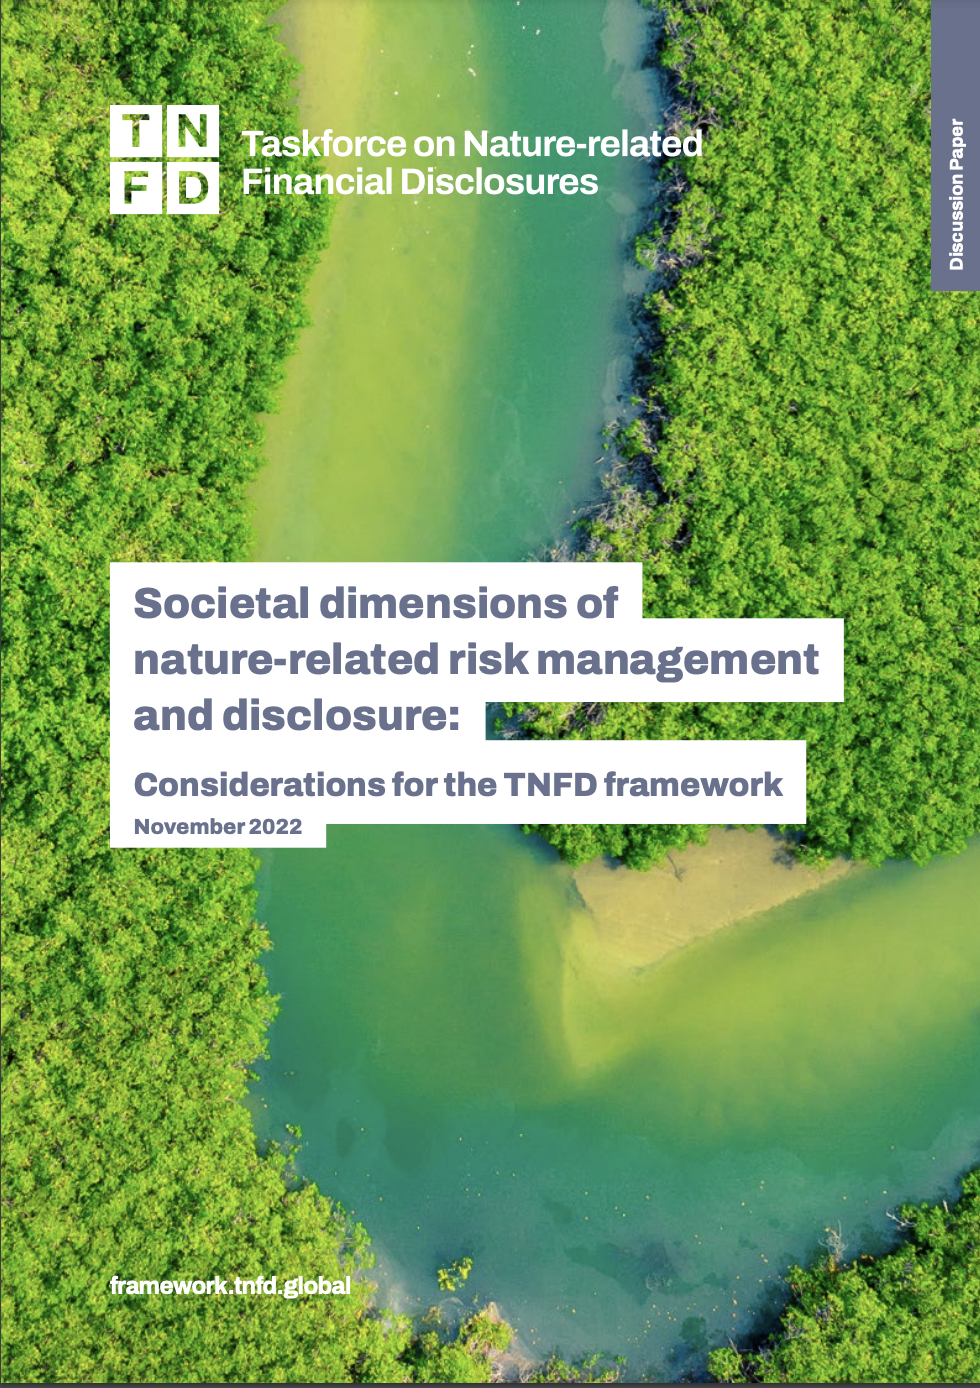 Dimensions sociétales de la gestion et de la divulgation des risques liés à la nature : Considérations pour le cadre TNFD